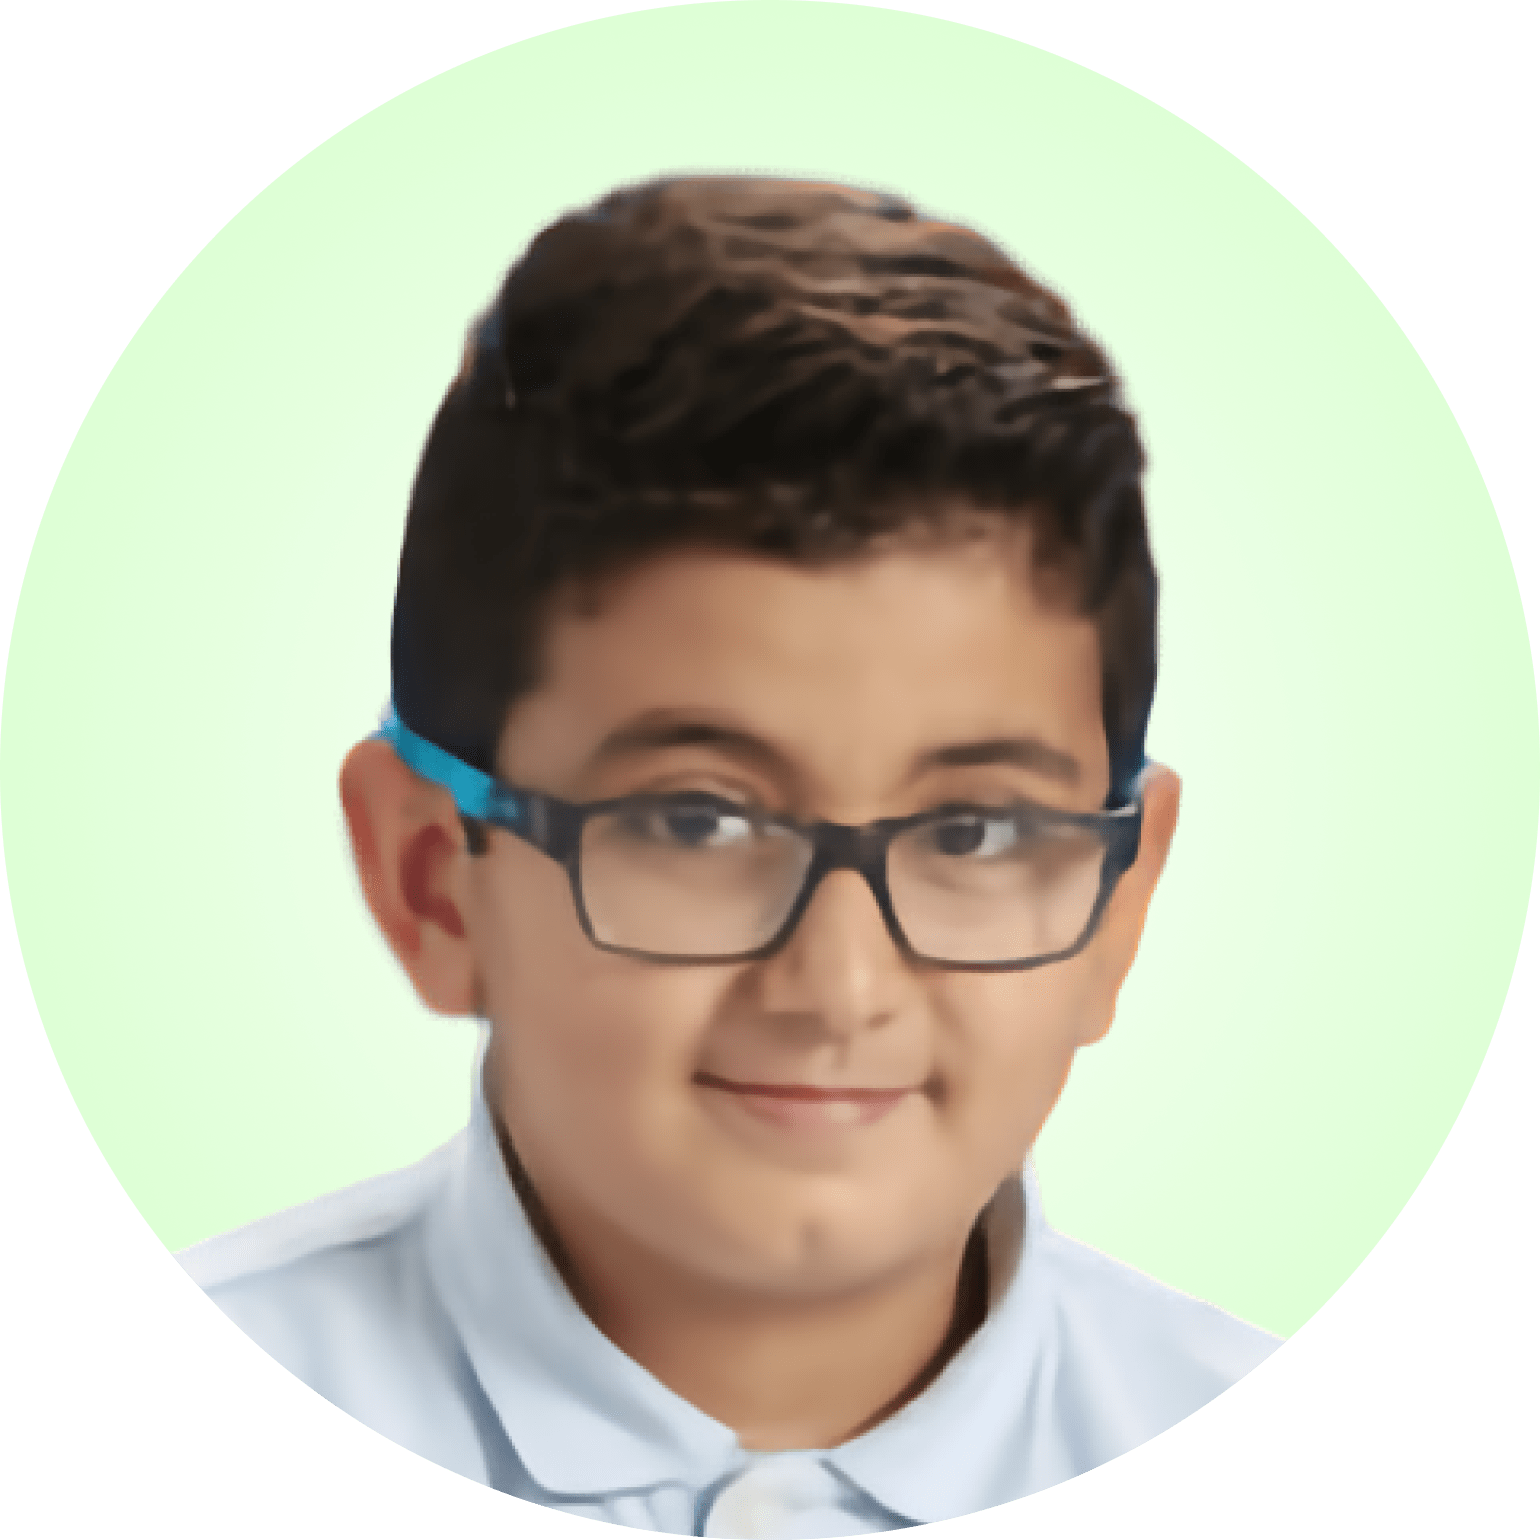 Boy - Age 10 - Sulayman Fahmi - 2